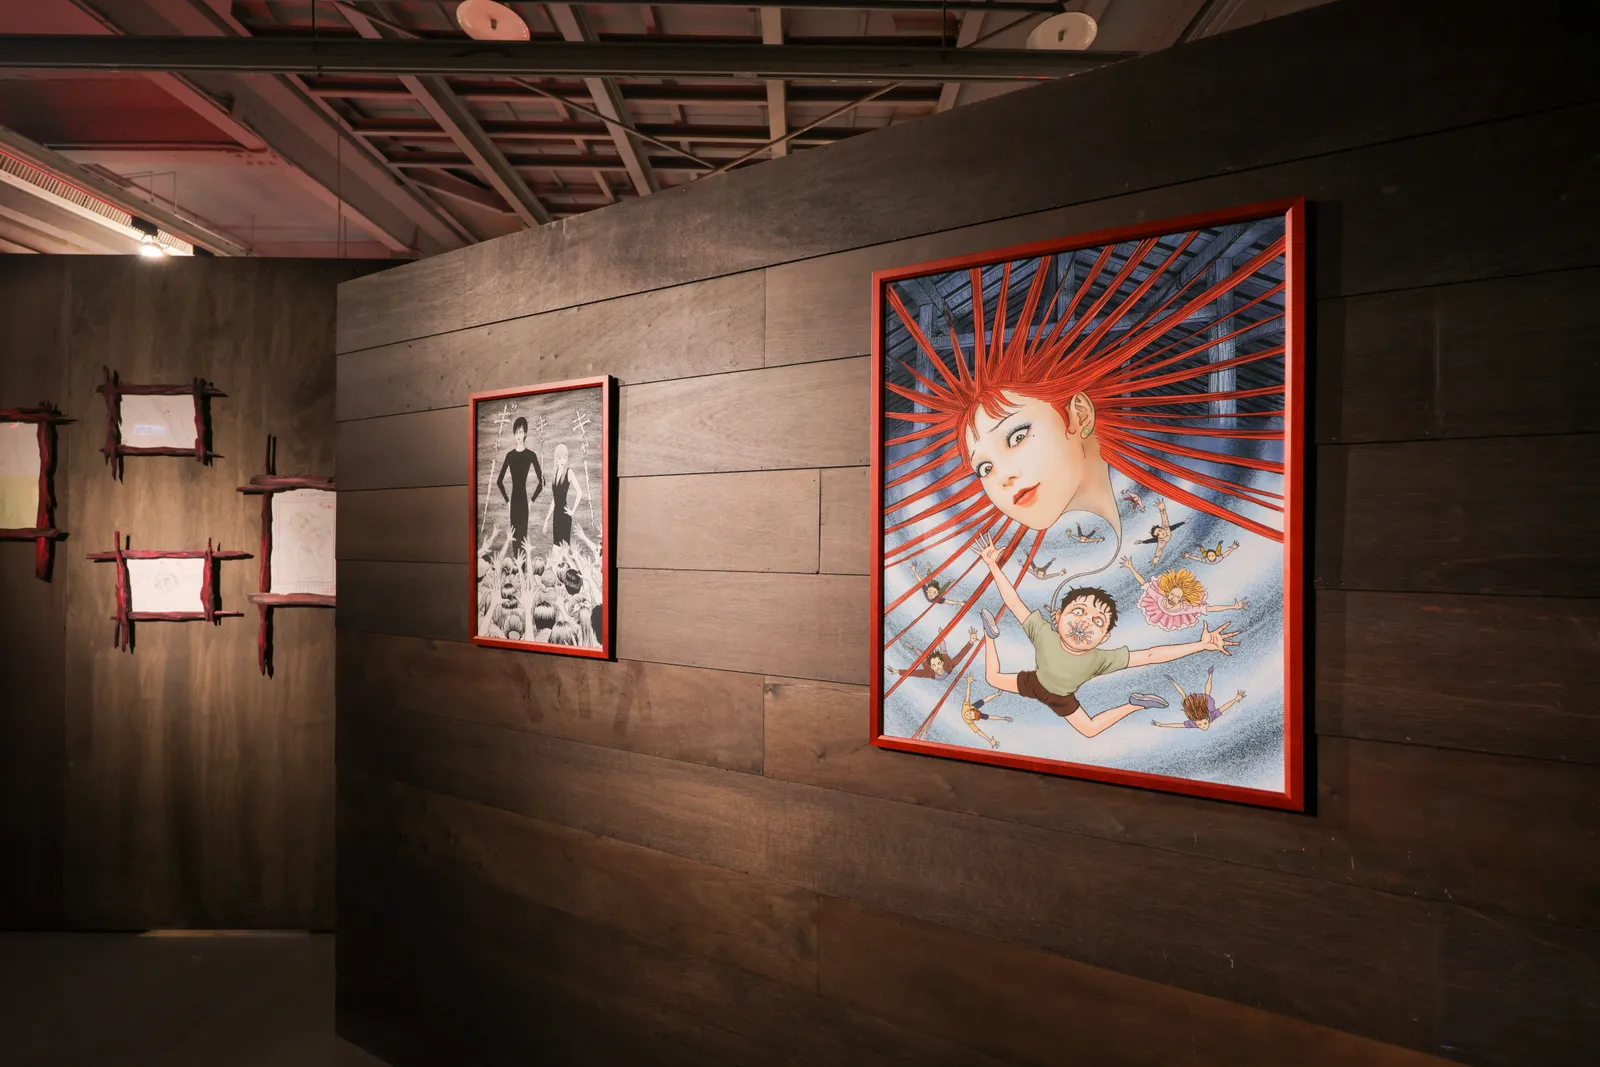 这是一个艺术画廊内部的照片，墙上挂着两幅风格独特的画作，左边的画较小，右边的画色彩鲜艳，主题鲜明。